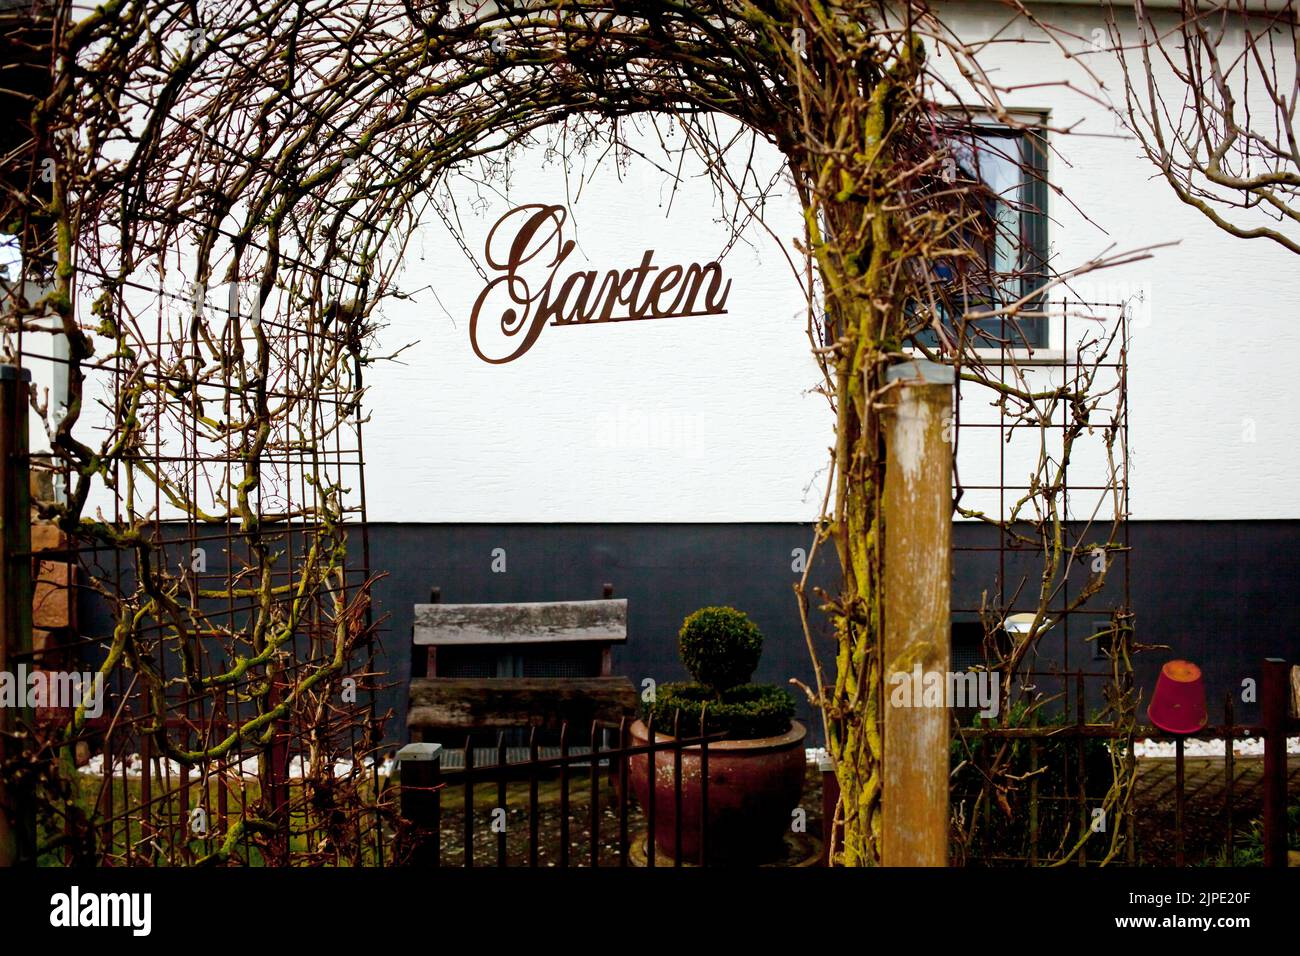 garden, gardens Stock Photo